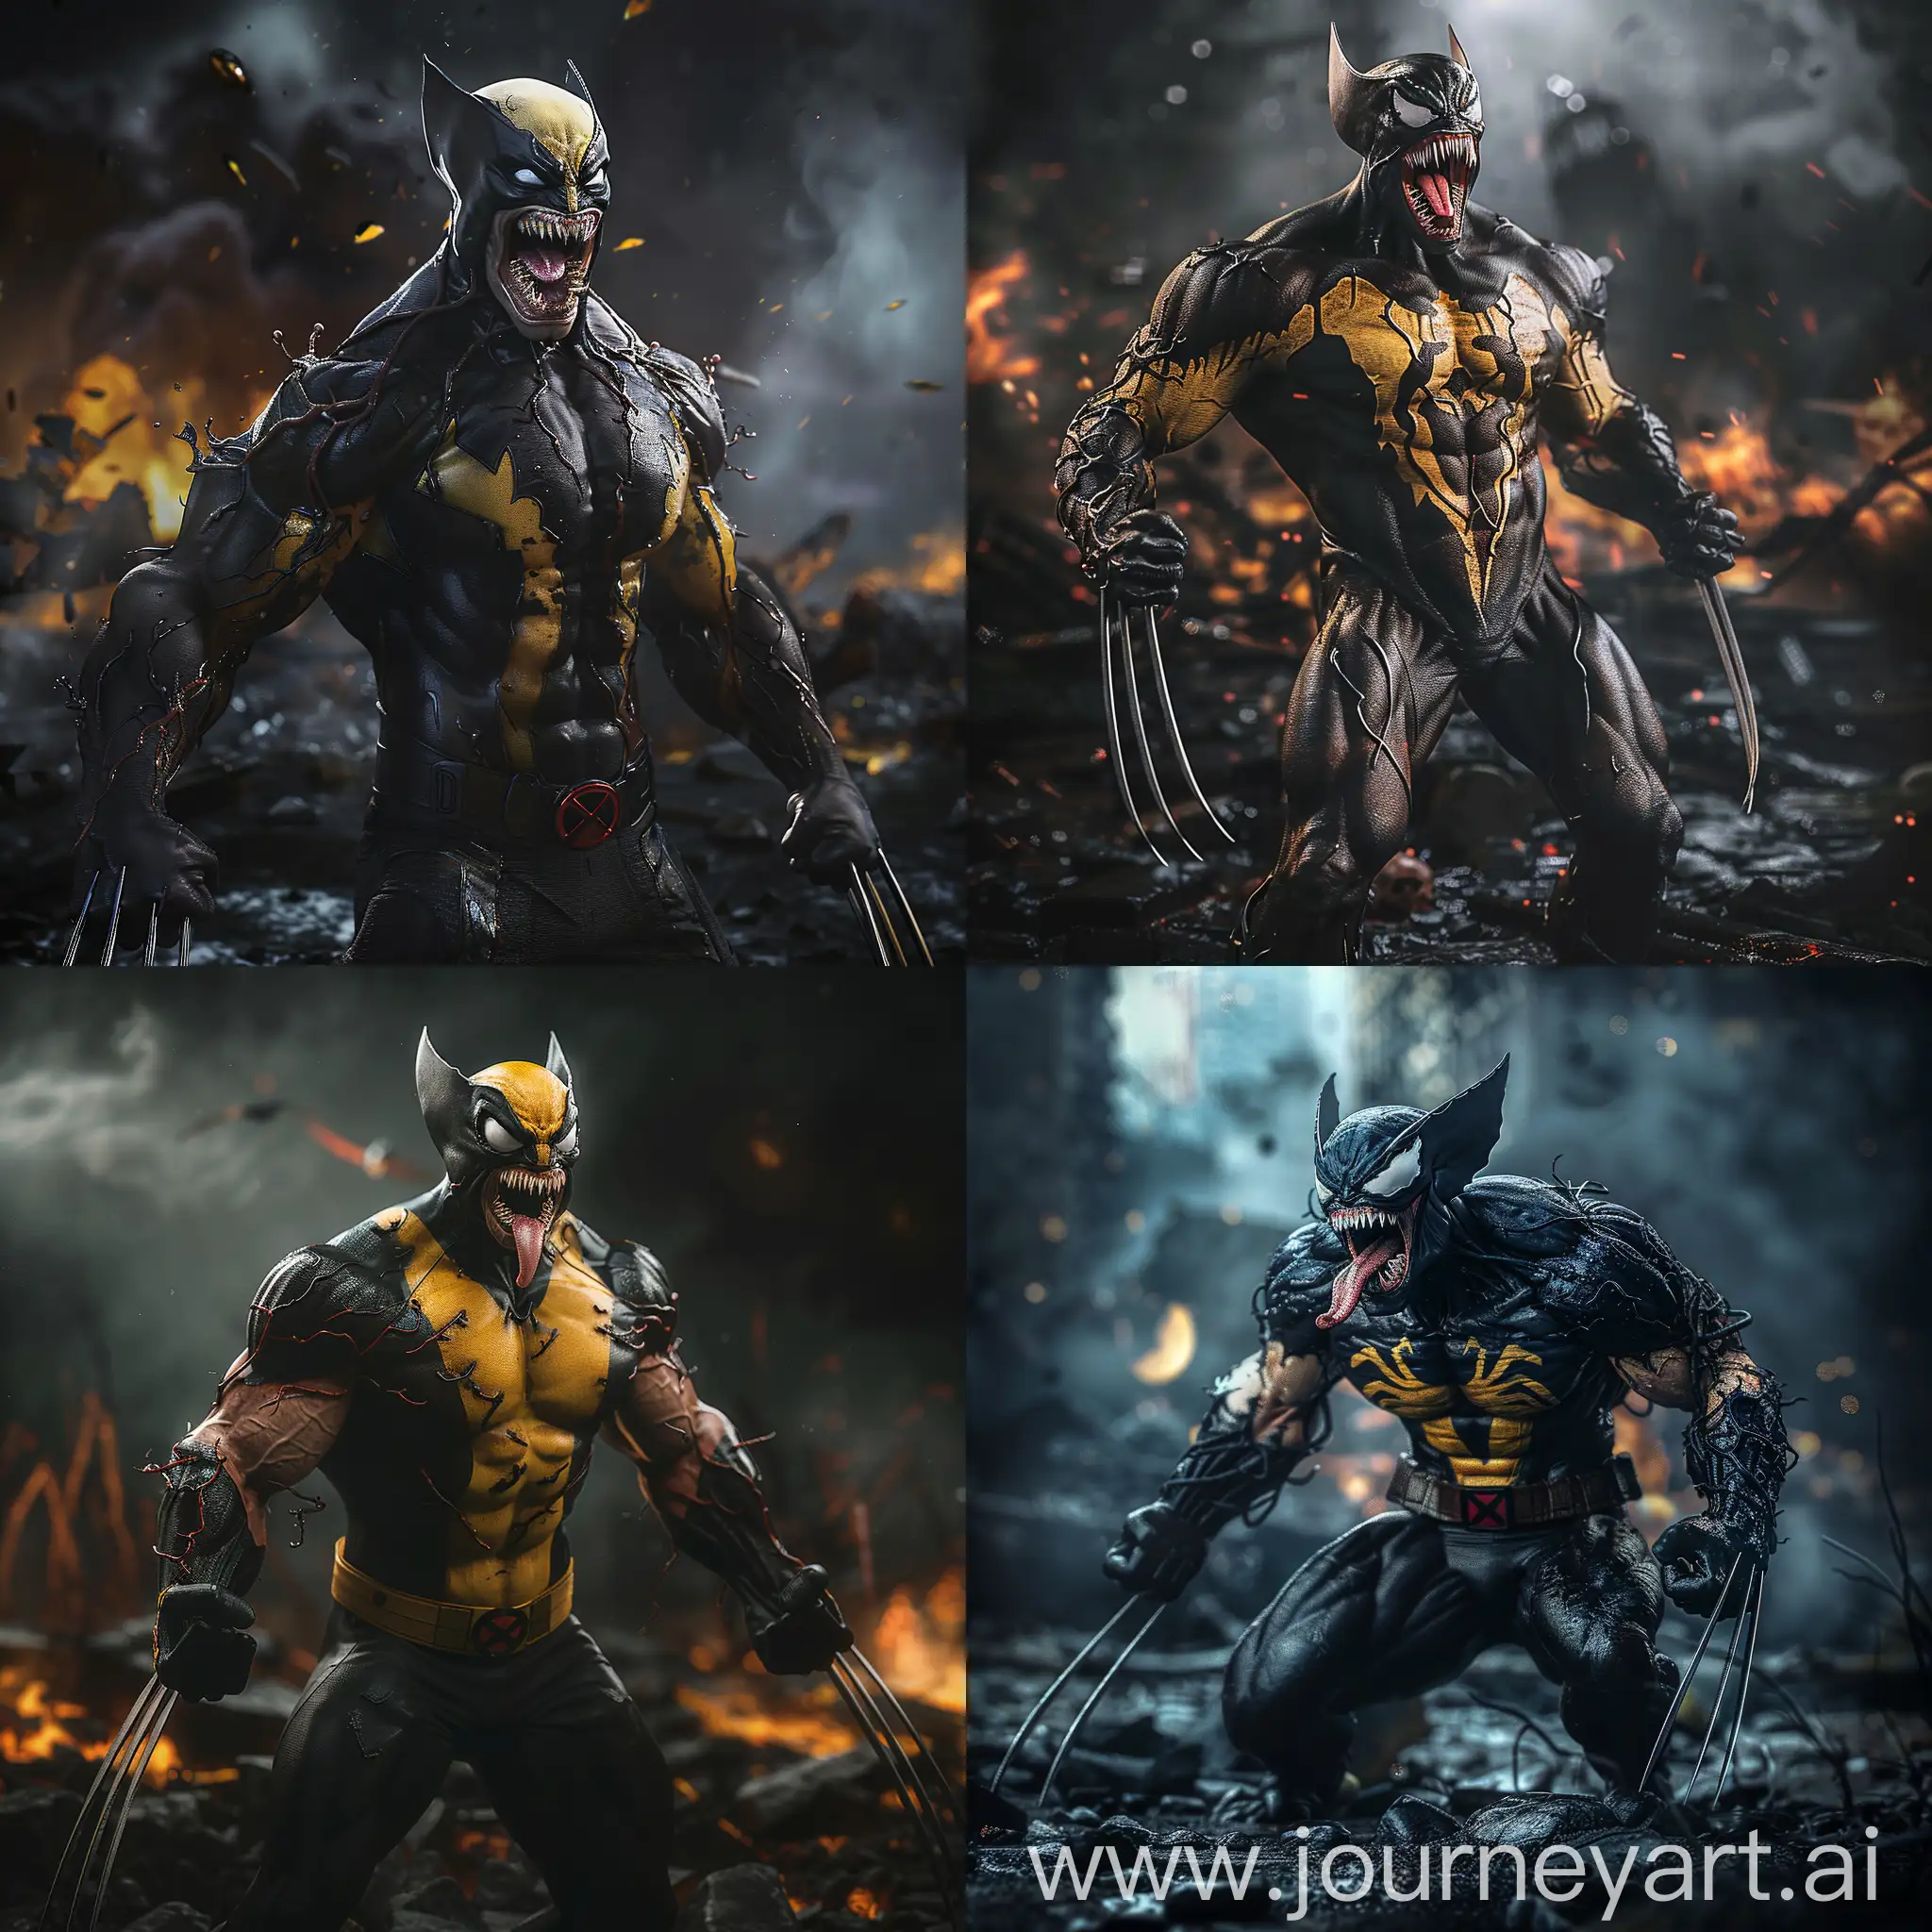 Wolverine-as-Venom-Cinematic-Realism-in-a-Dark-Destructive-Background